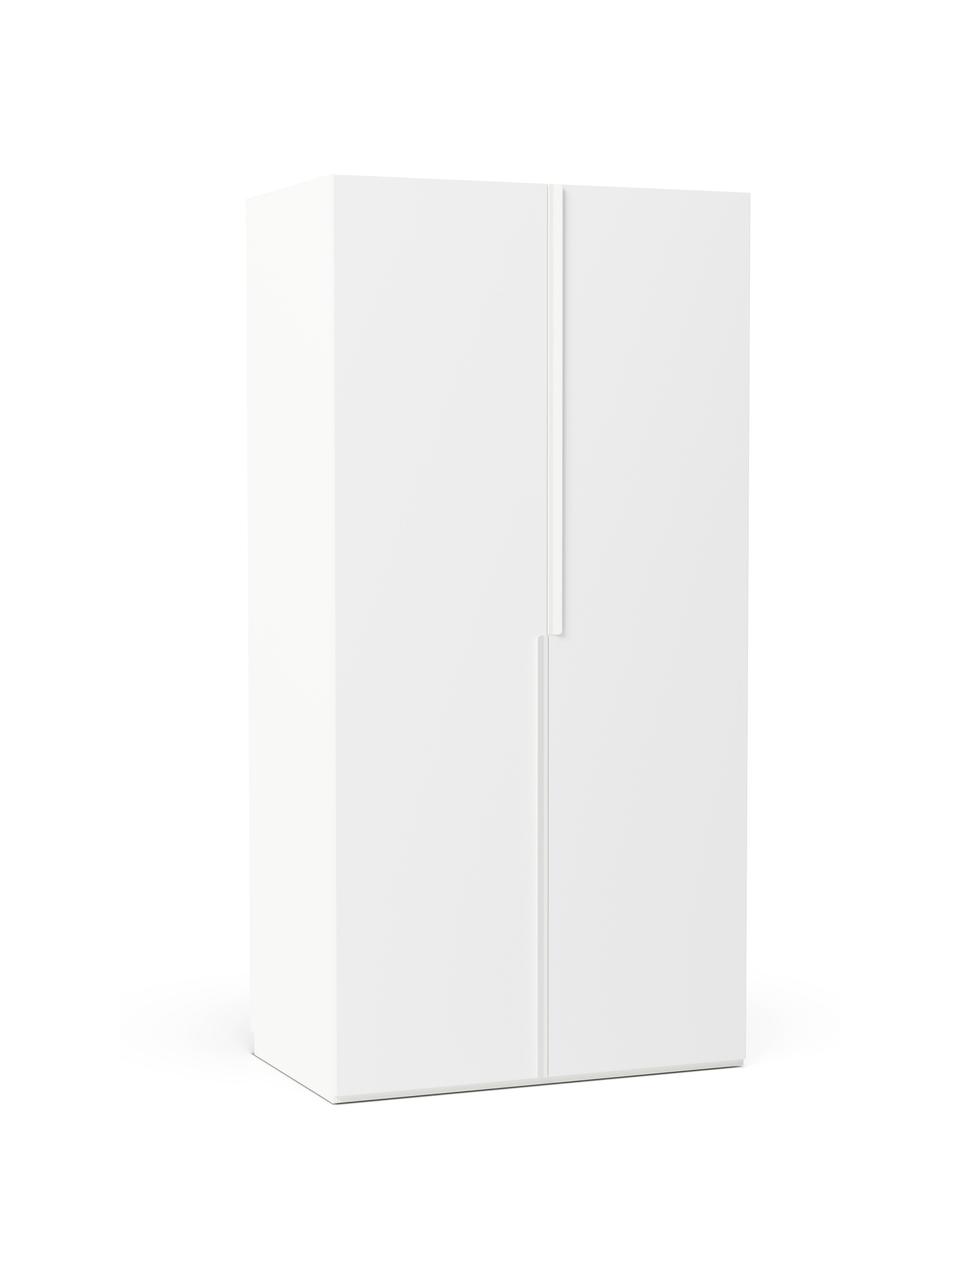 Modulaire draaideurkast Leon in wit, 100 cm breed, meerdere varianten, Frame: met melamine beklede spaa, Wit, Basis interieur, hoogte 200 cm